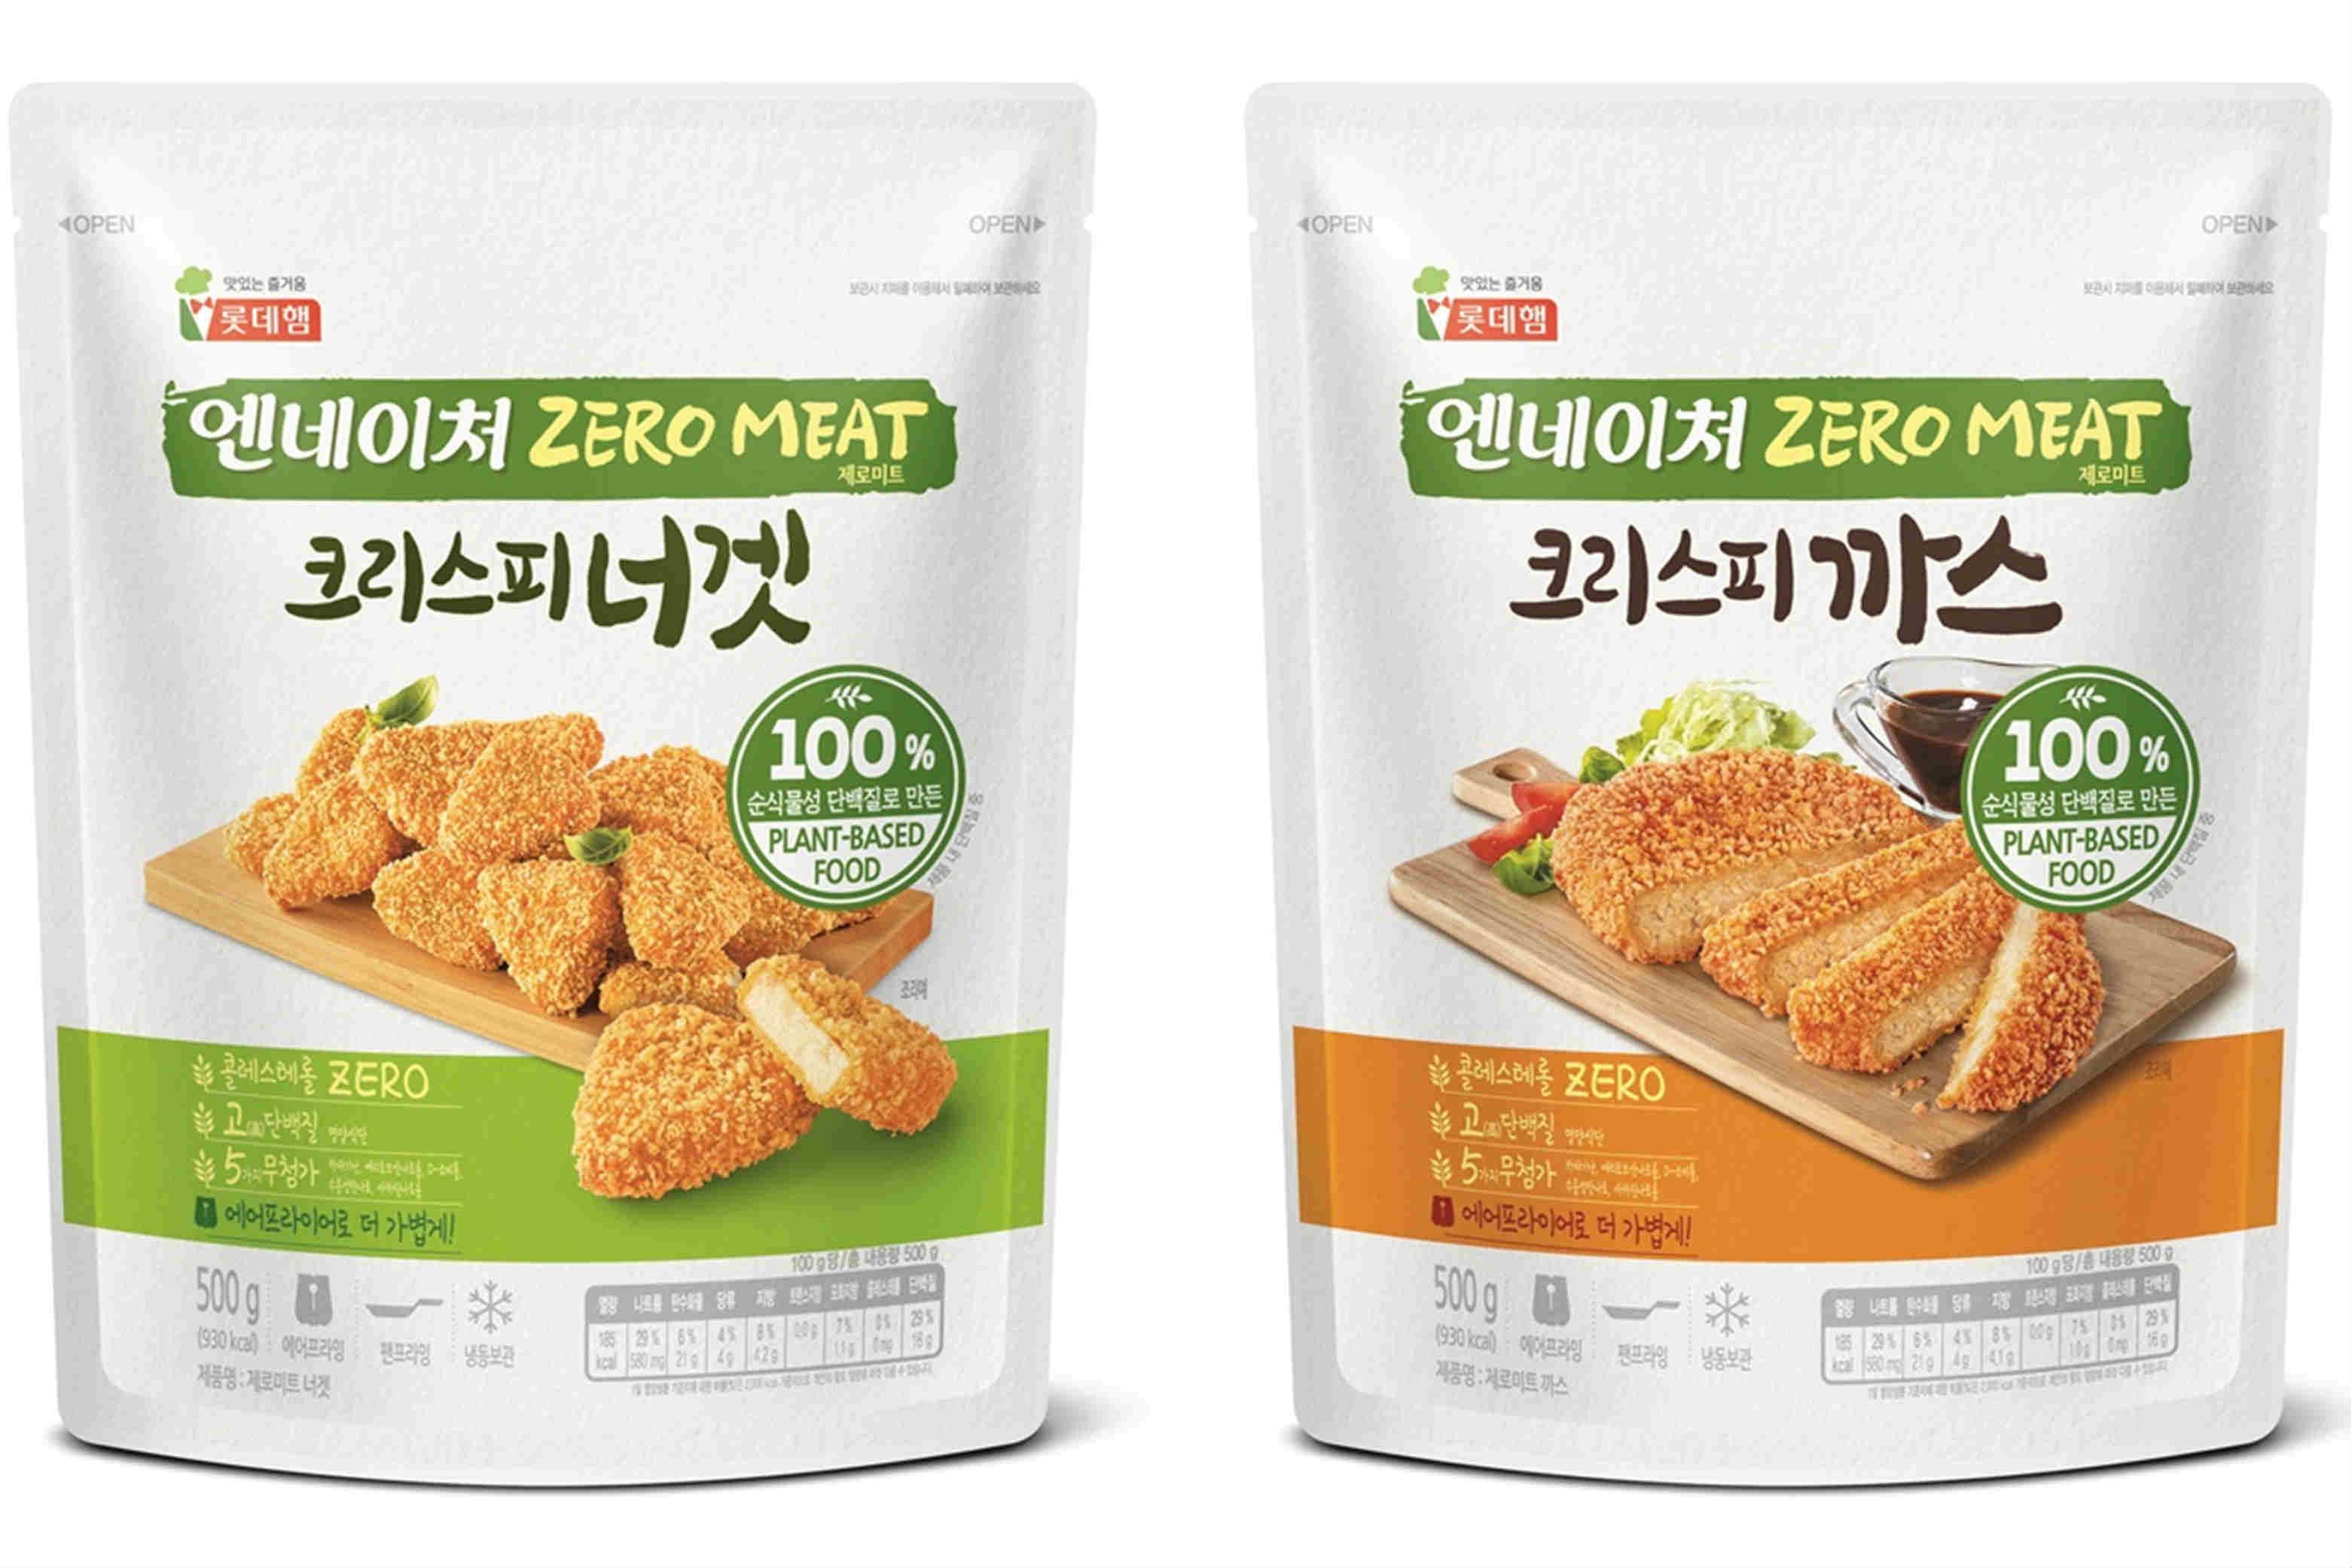 롯데푸드와 동원F&B, 대체육류사업으로 국내 채식시장 선점 잰걸음 